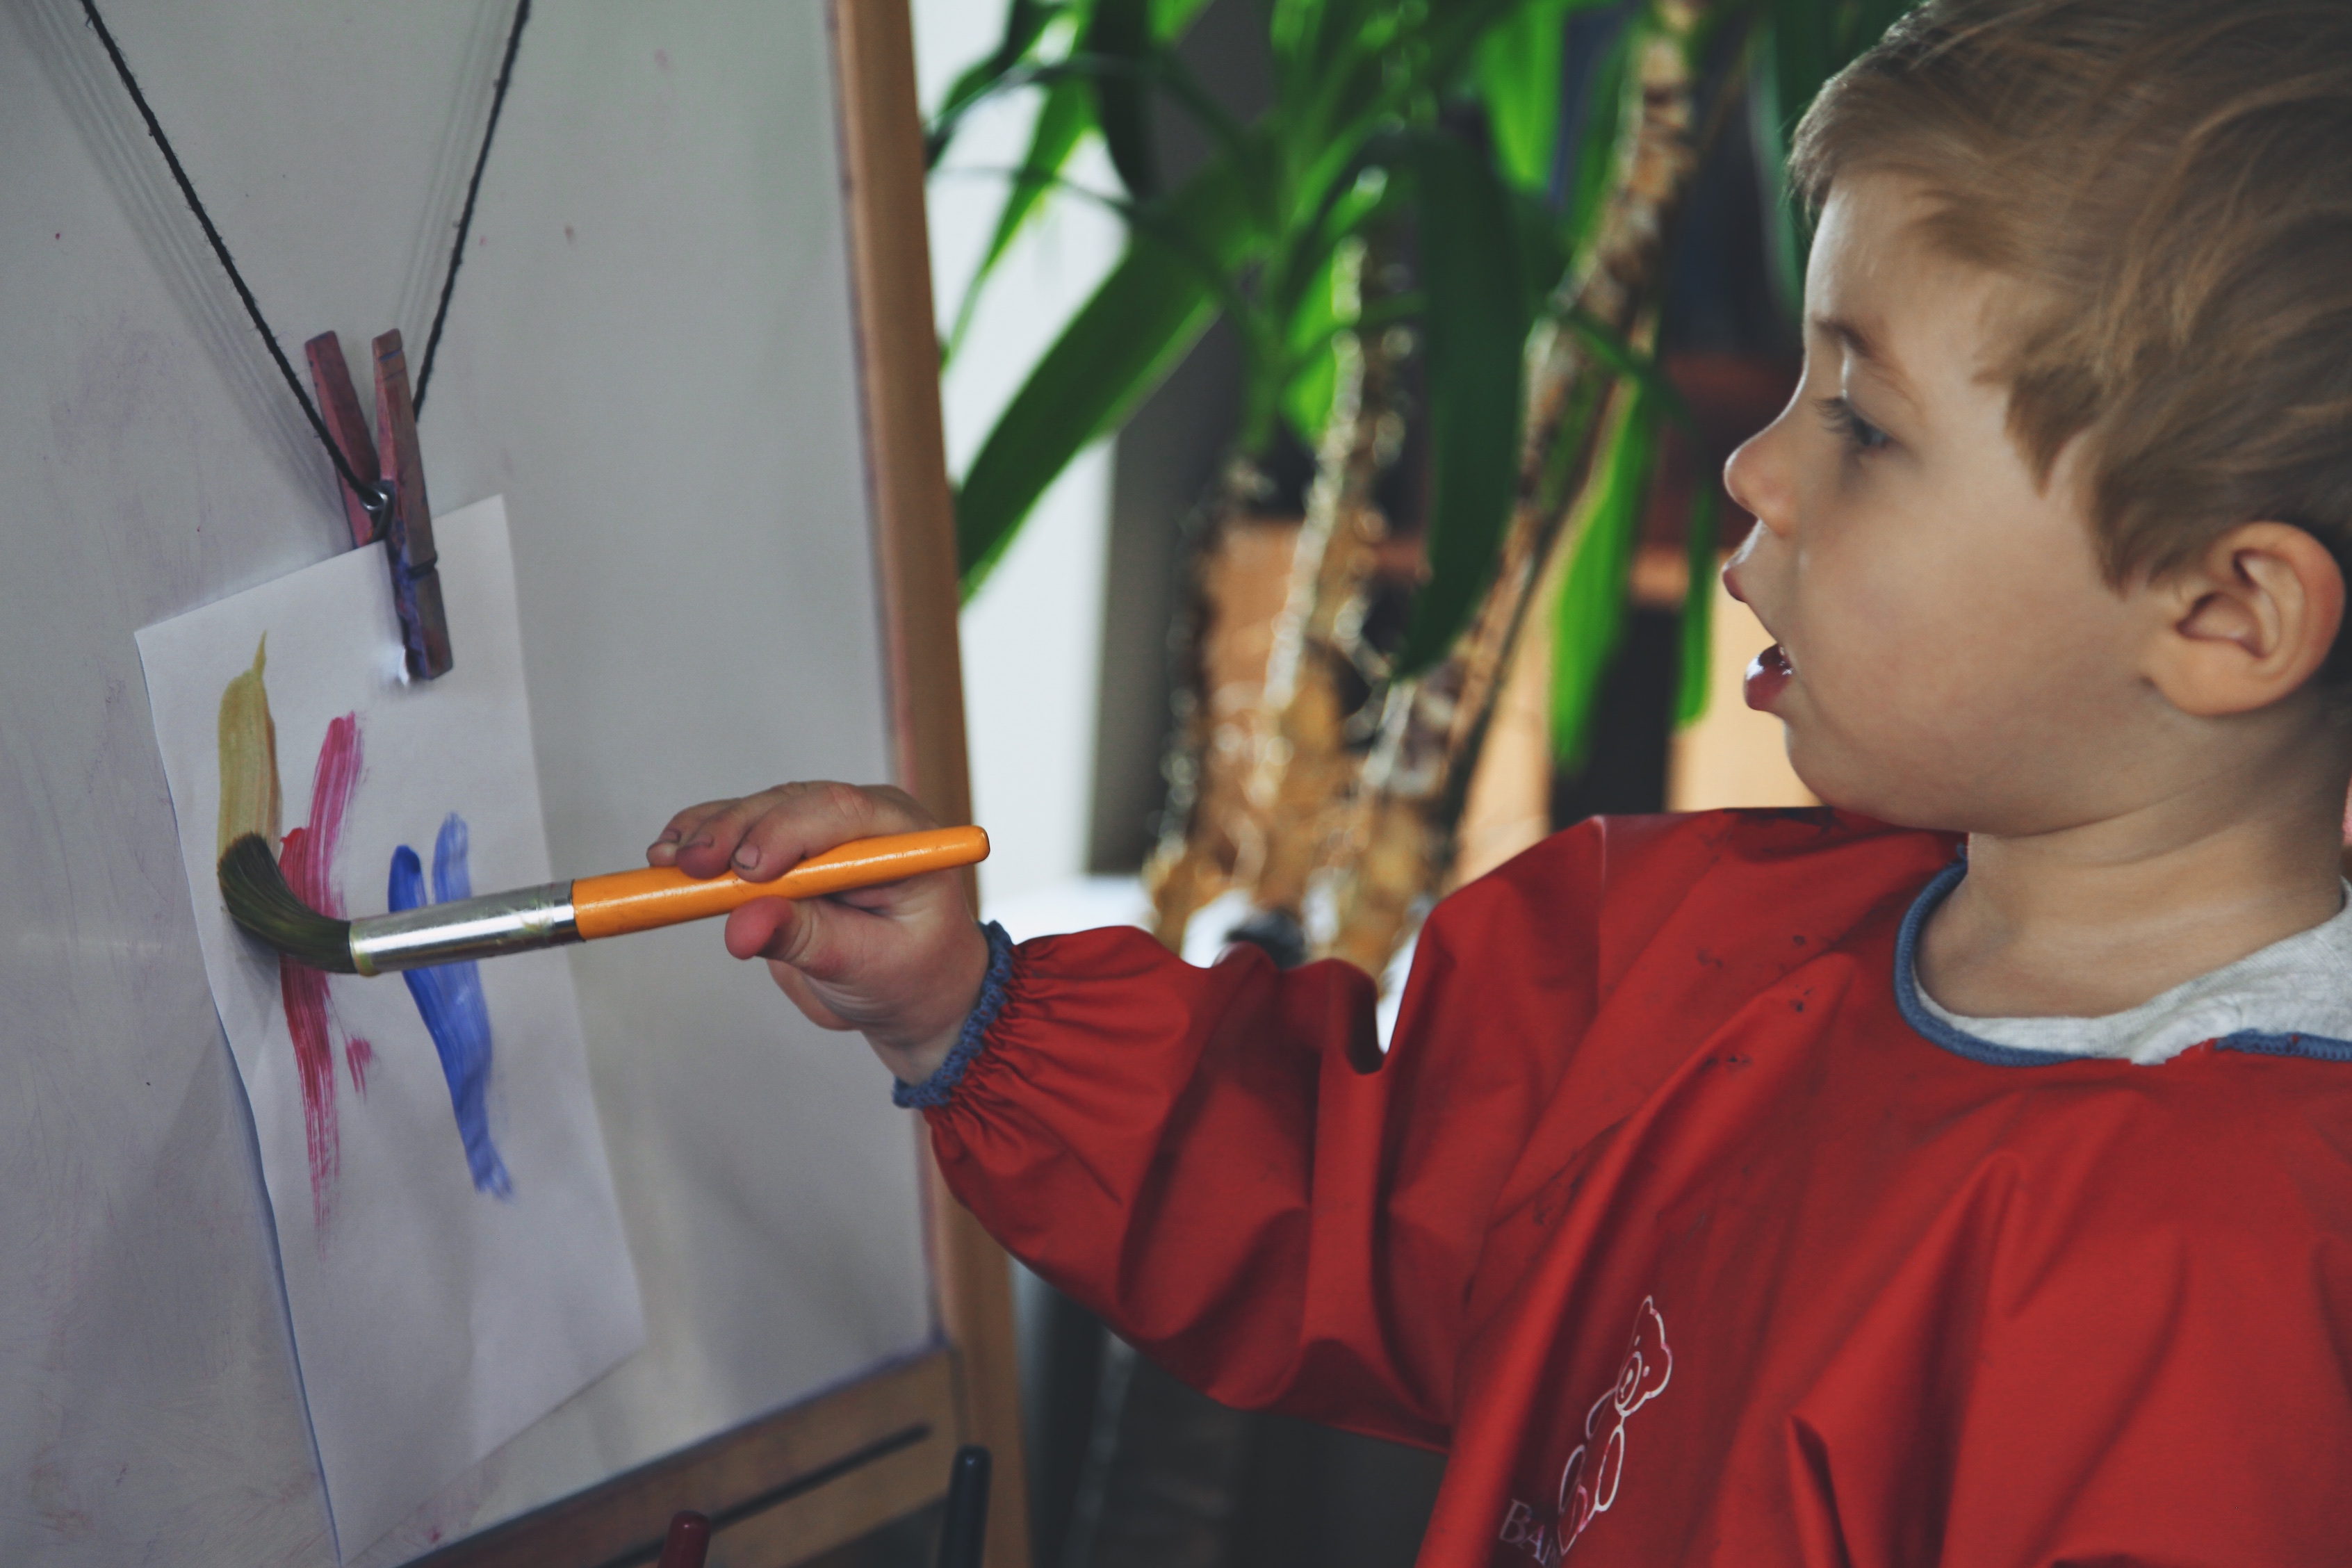 Bacs sensoriels Montessori, qu'est-ce que c'est ? - Le bazar d'Alison -  Blog Lifestyle, Zéro Déchet et Kids